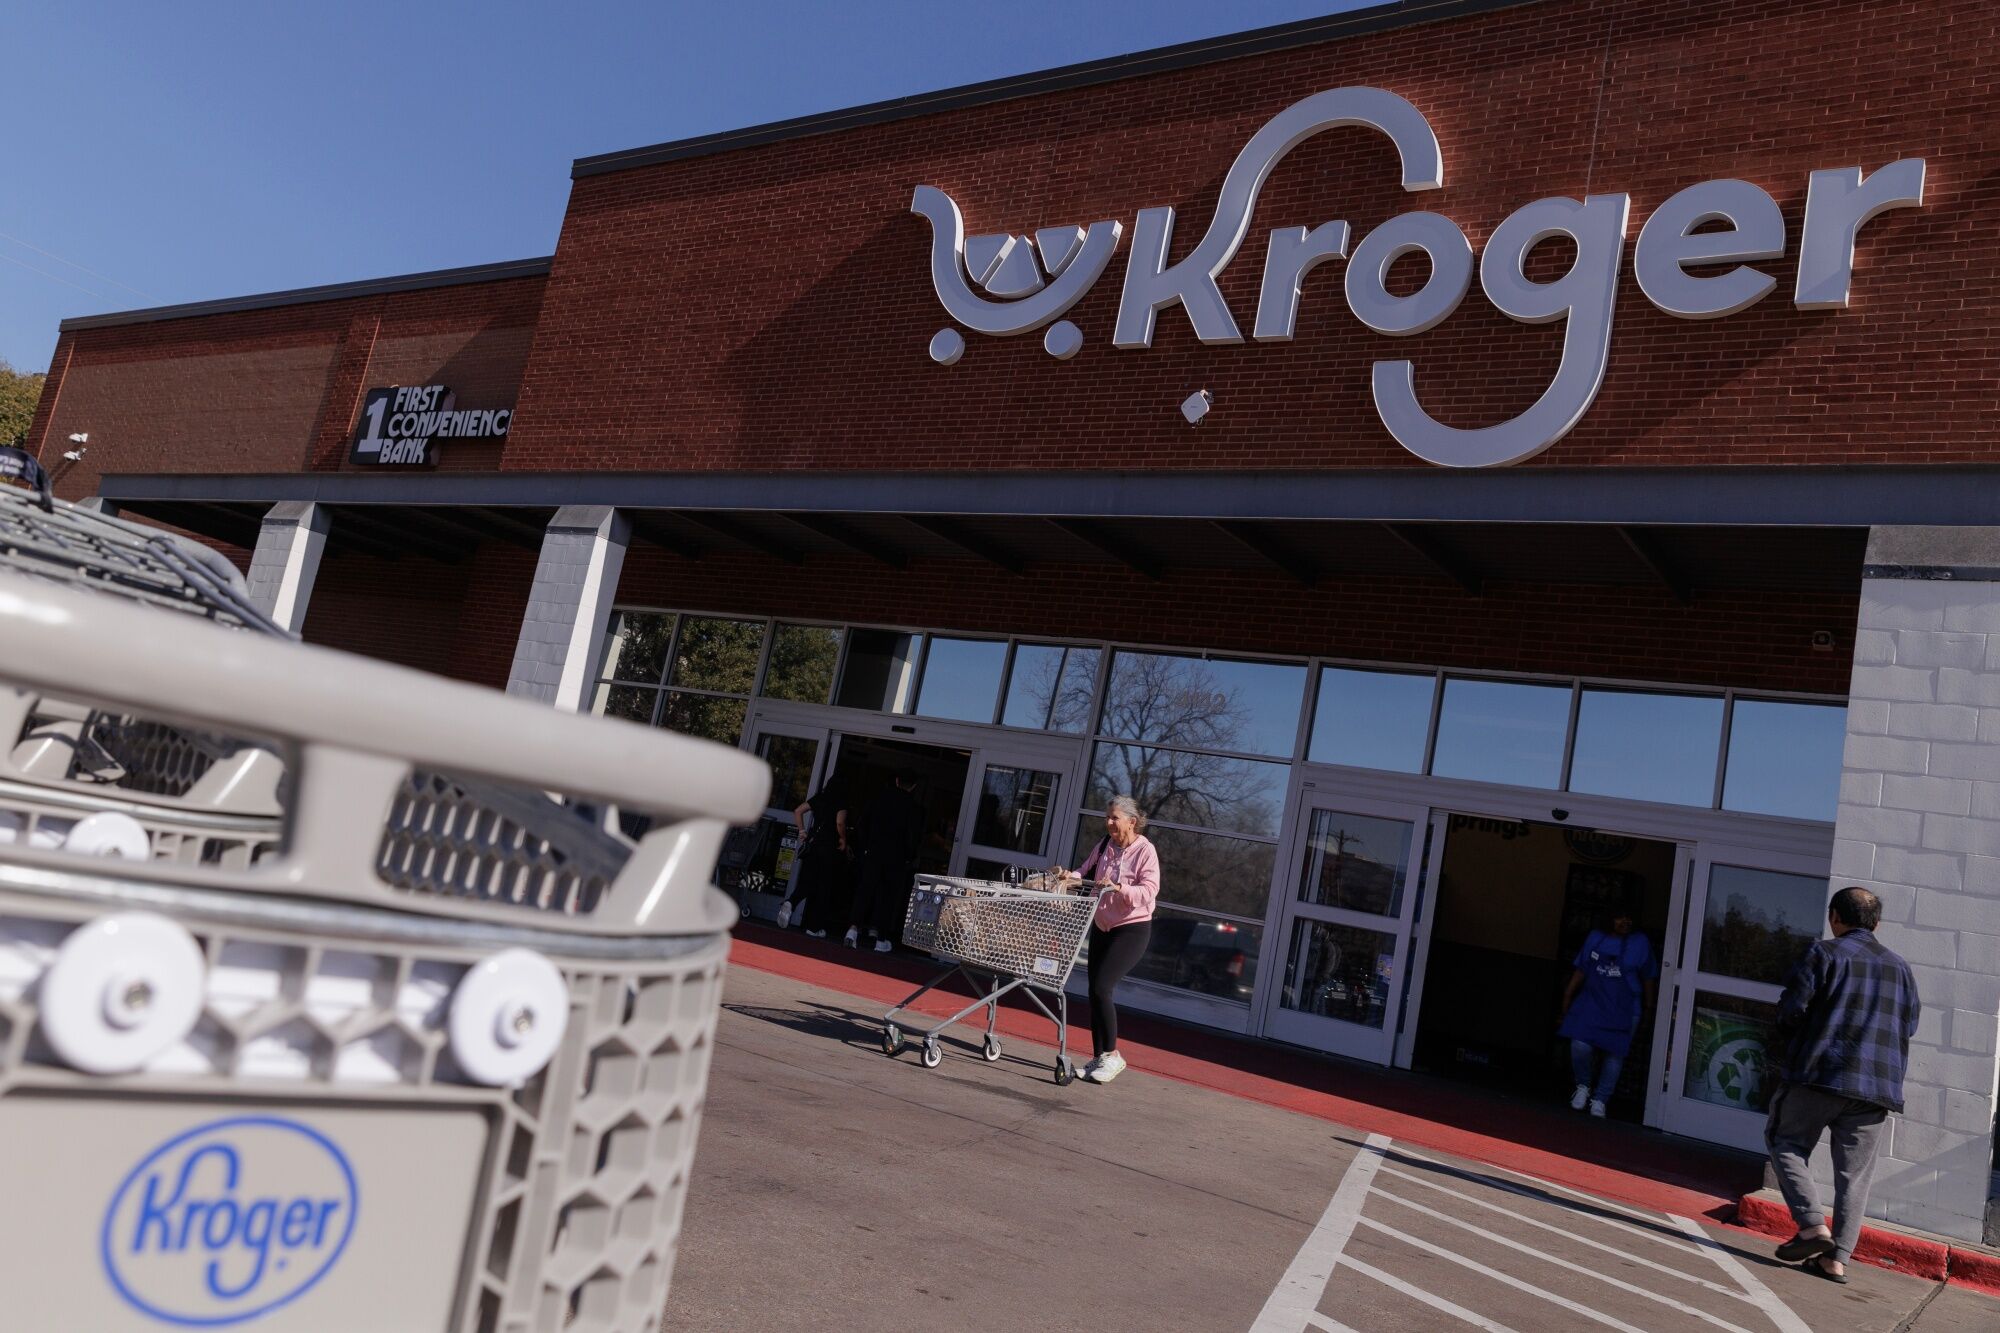 kroger, albertsons agree to divest more stores in merger effort